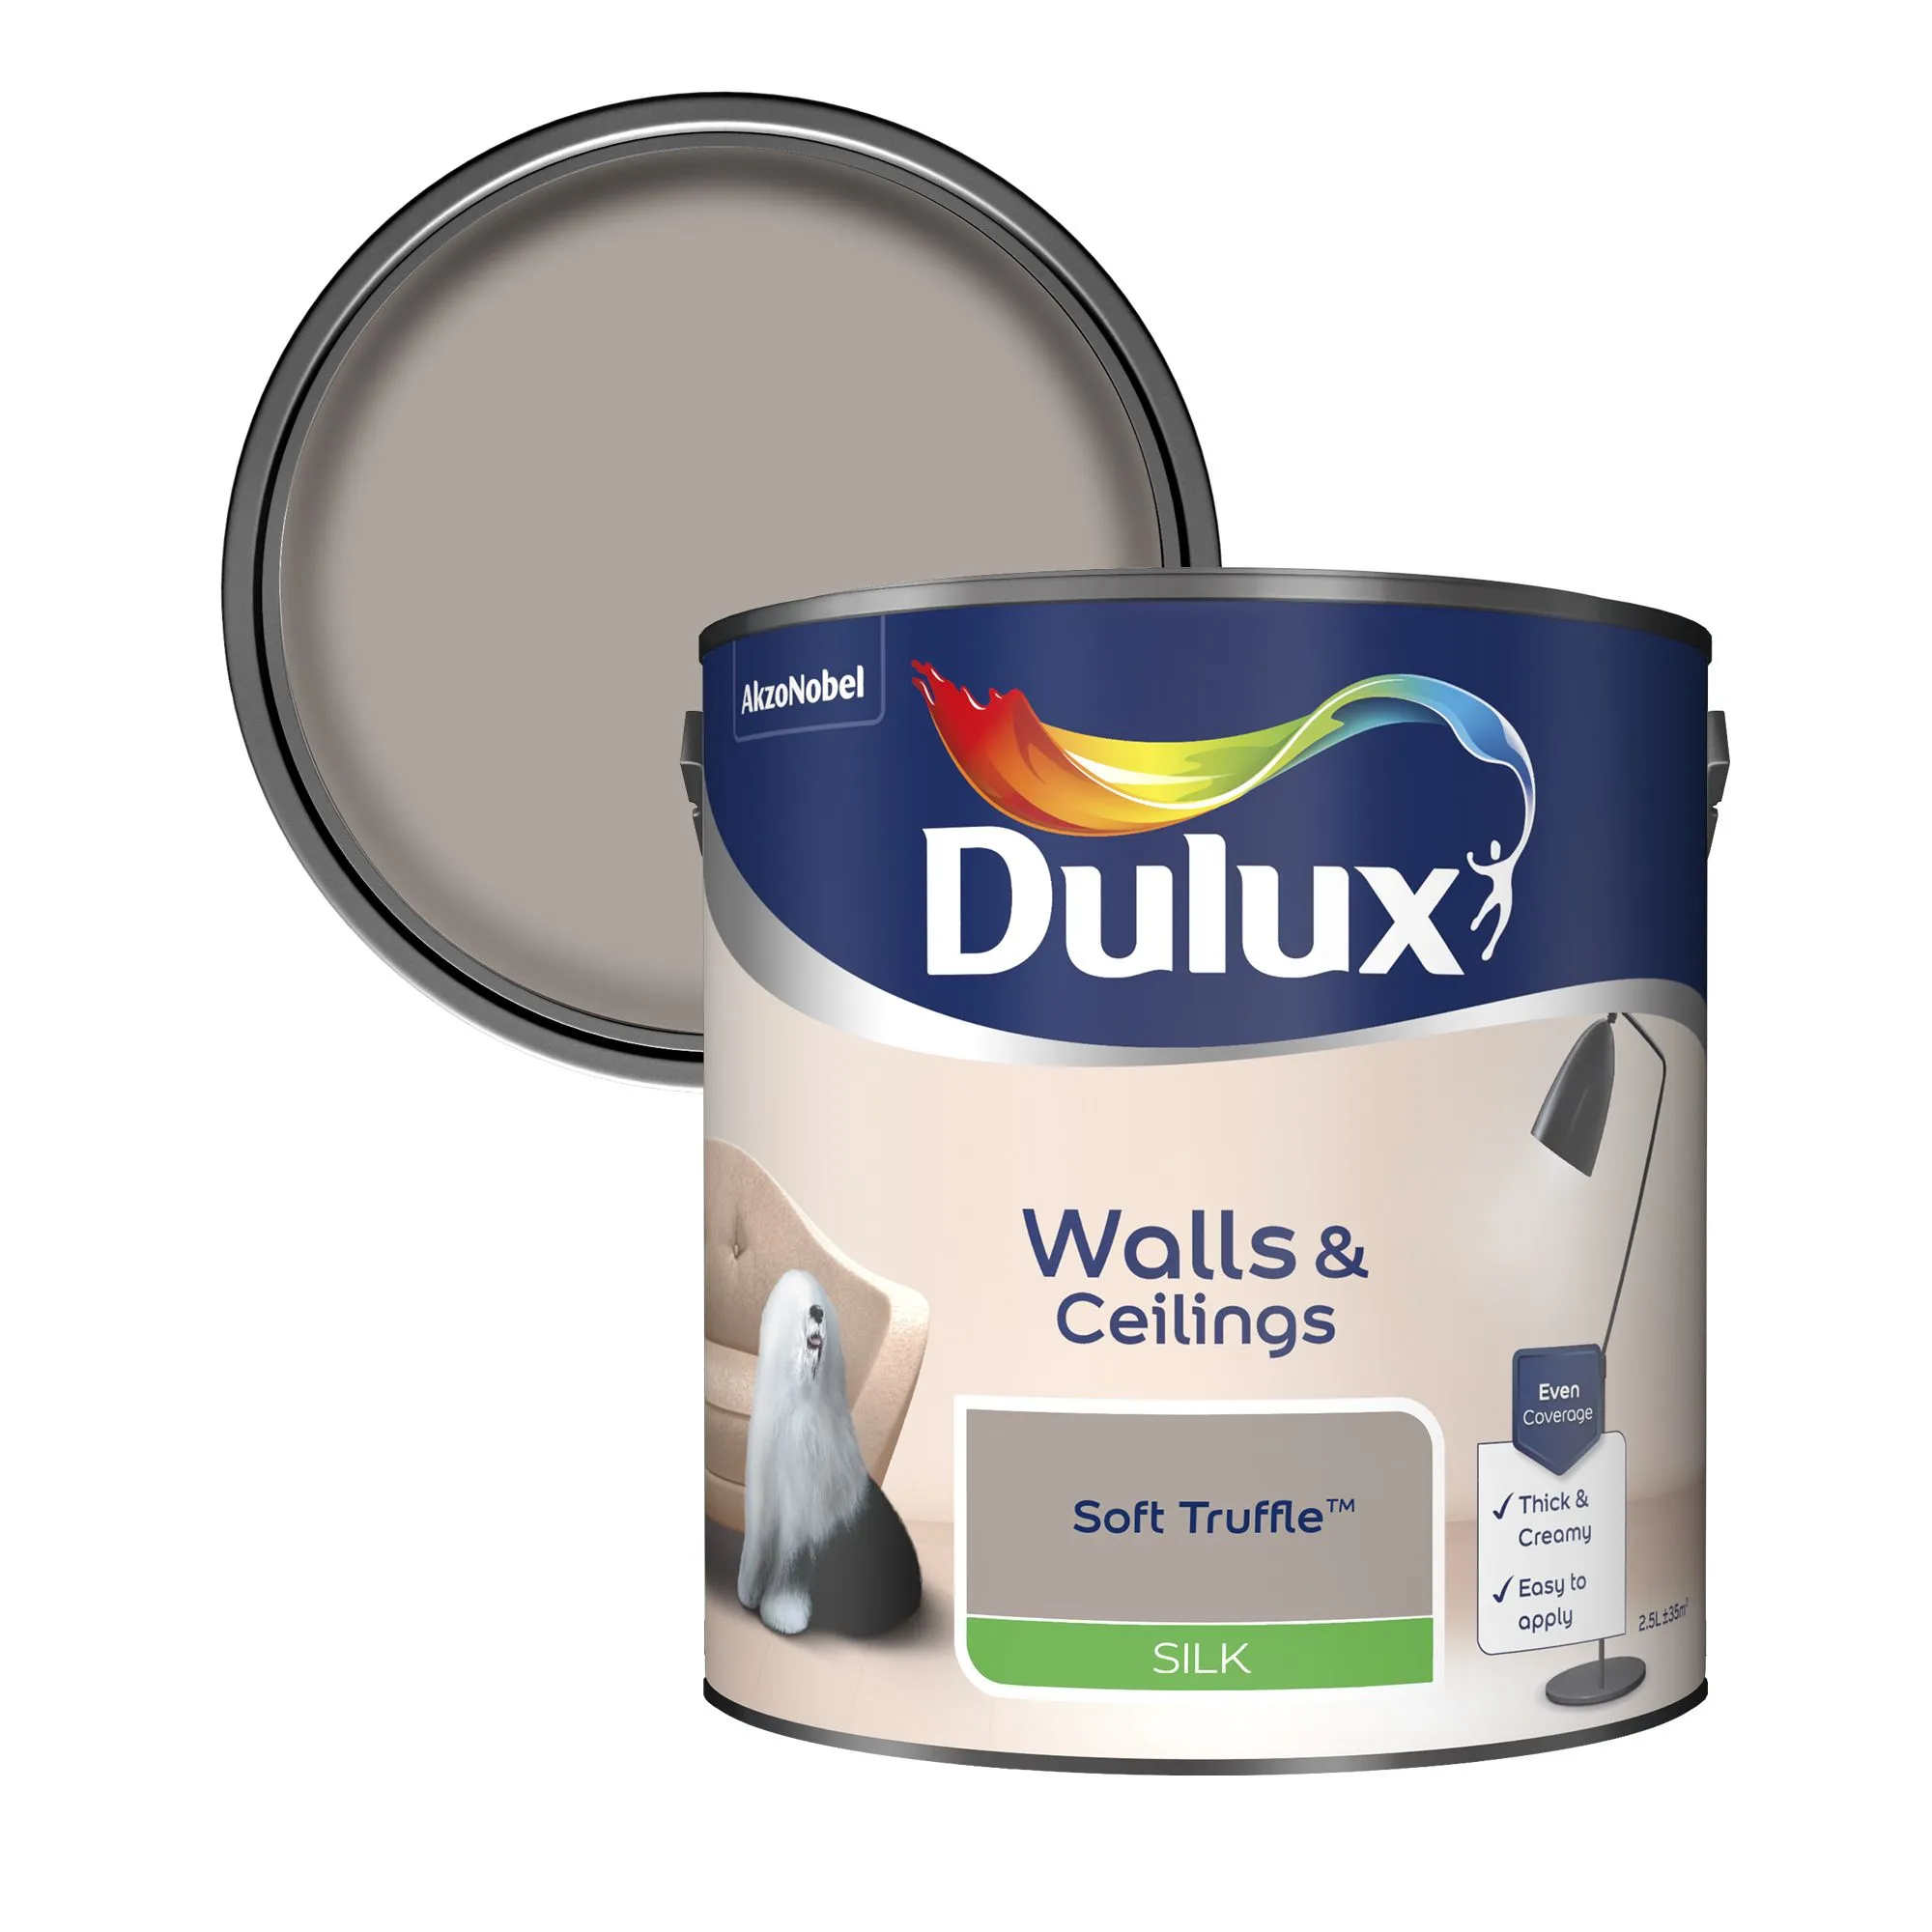 Dulux Neutrals Soft truffle Silk Emulsion paint, 2.5L